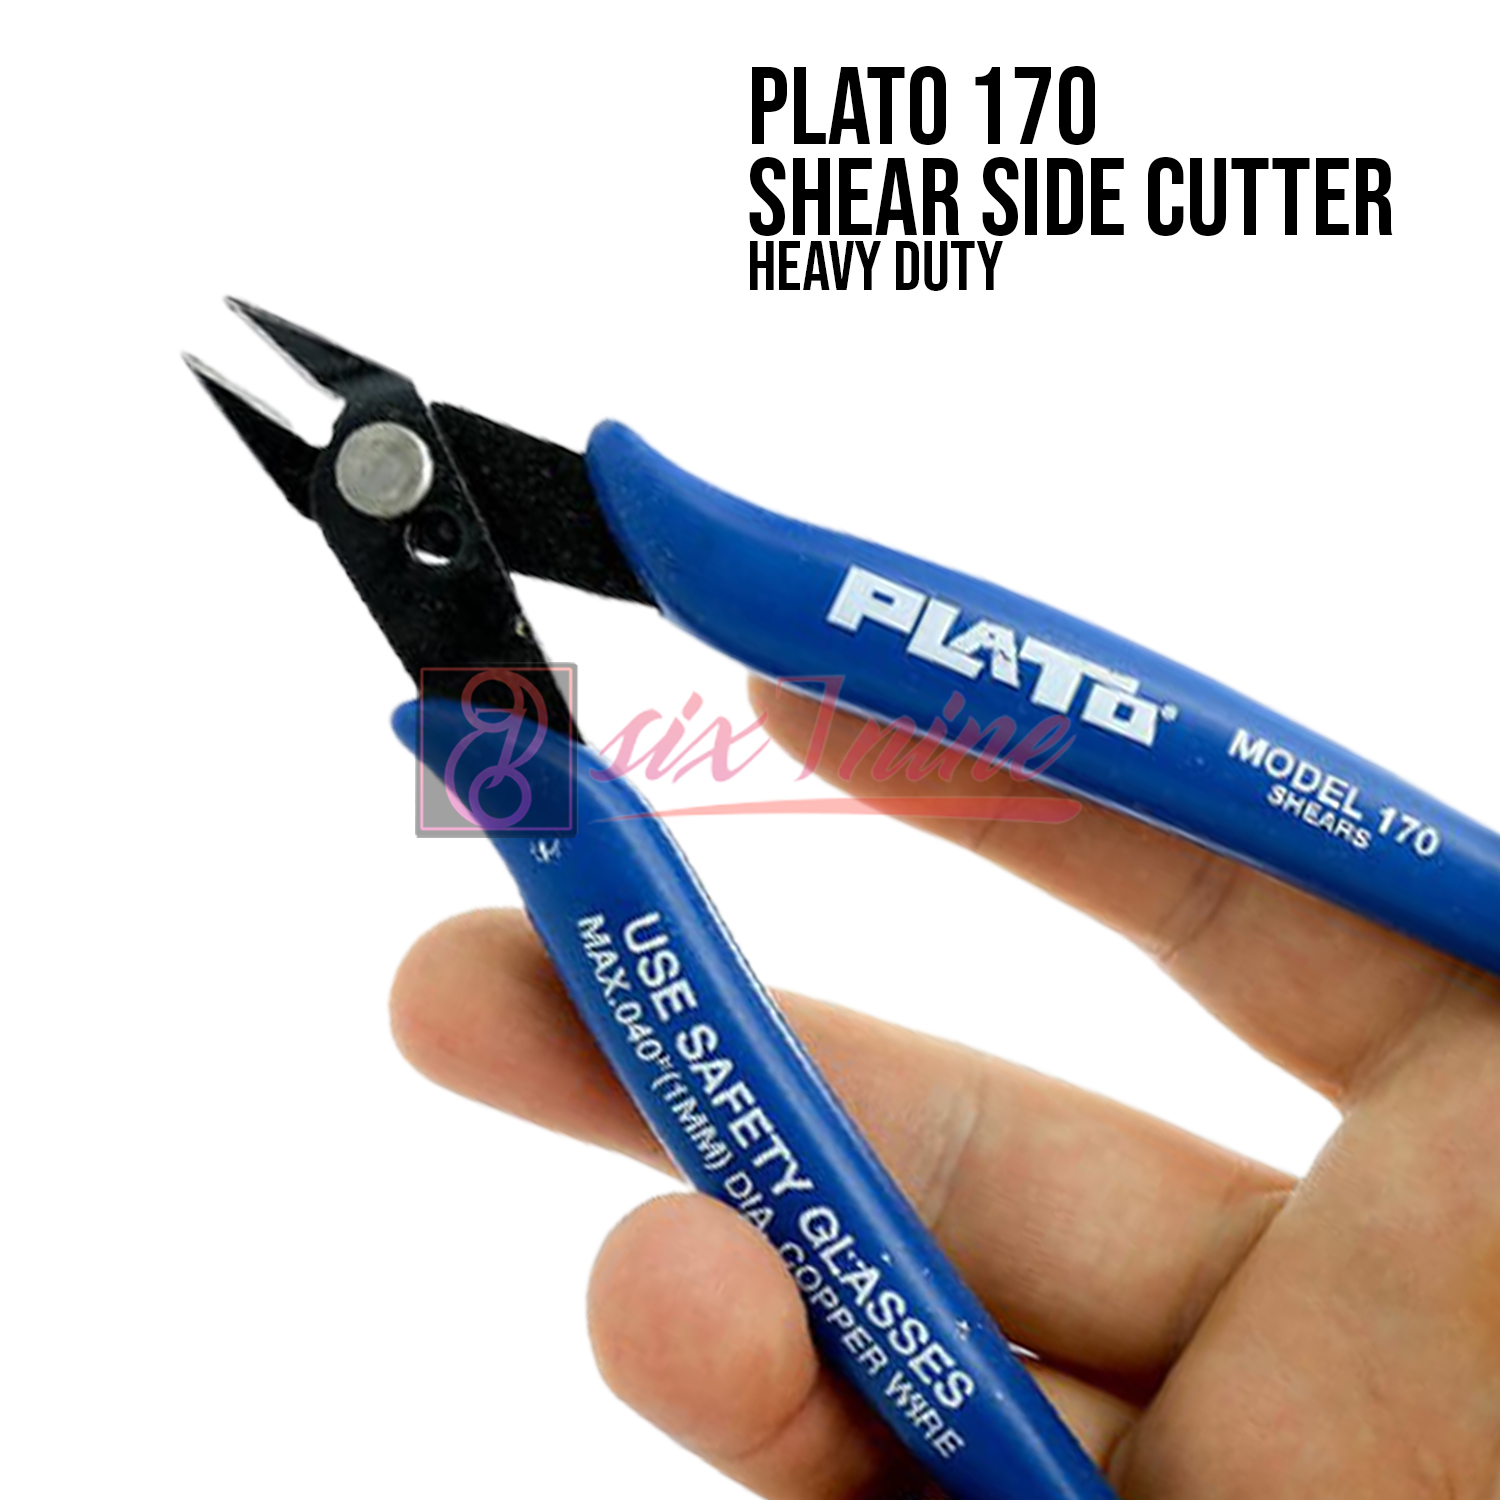 Plato 170 Plato Shear Cutter, Soldering Tools, Static Dissipative